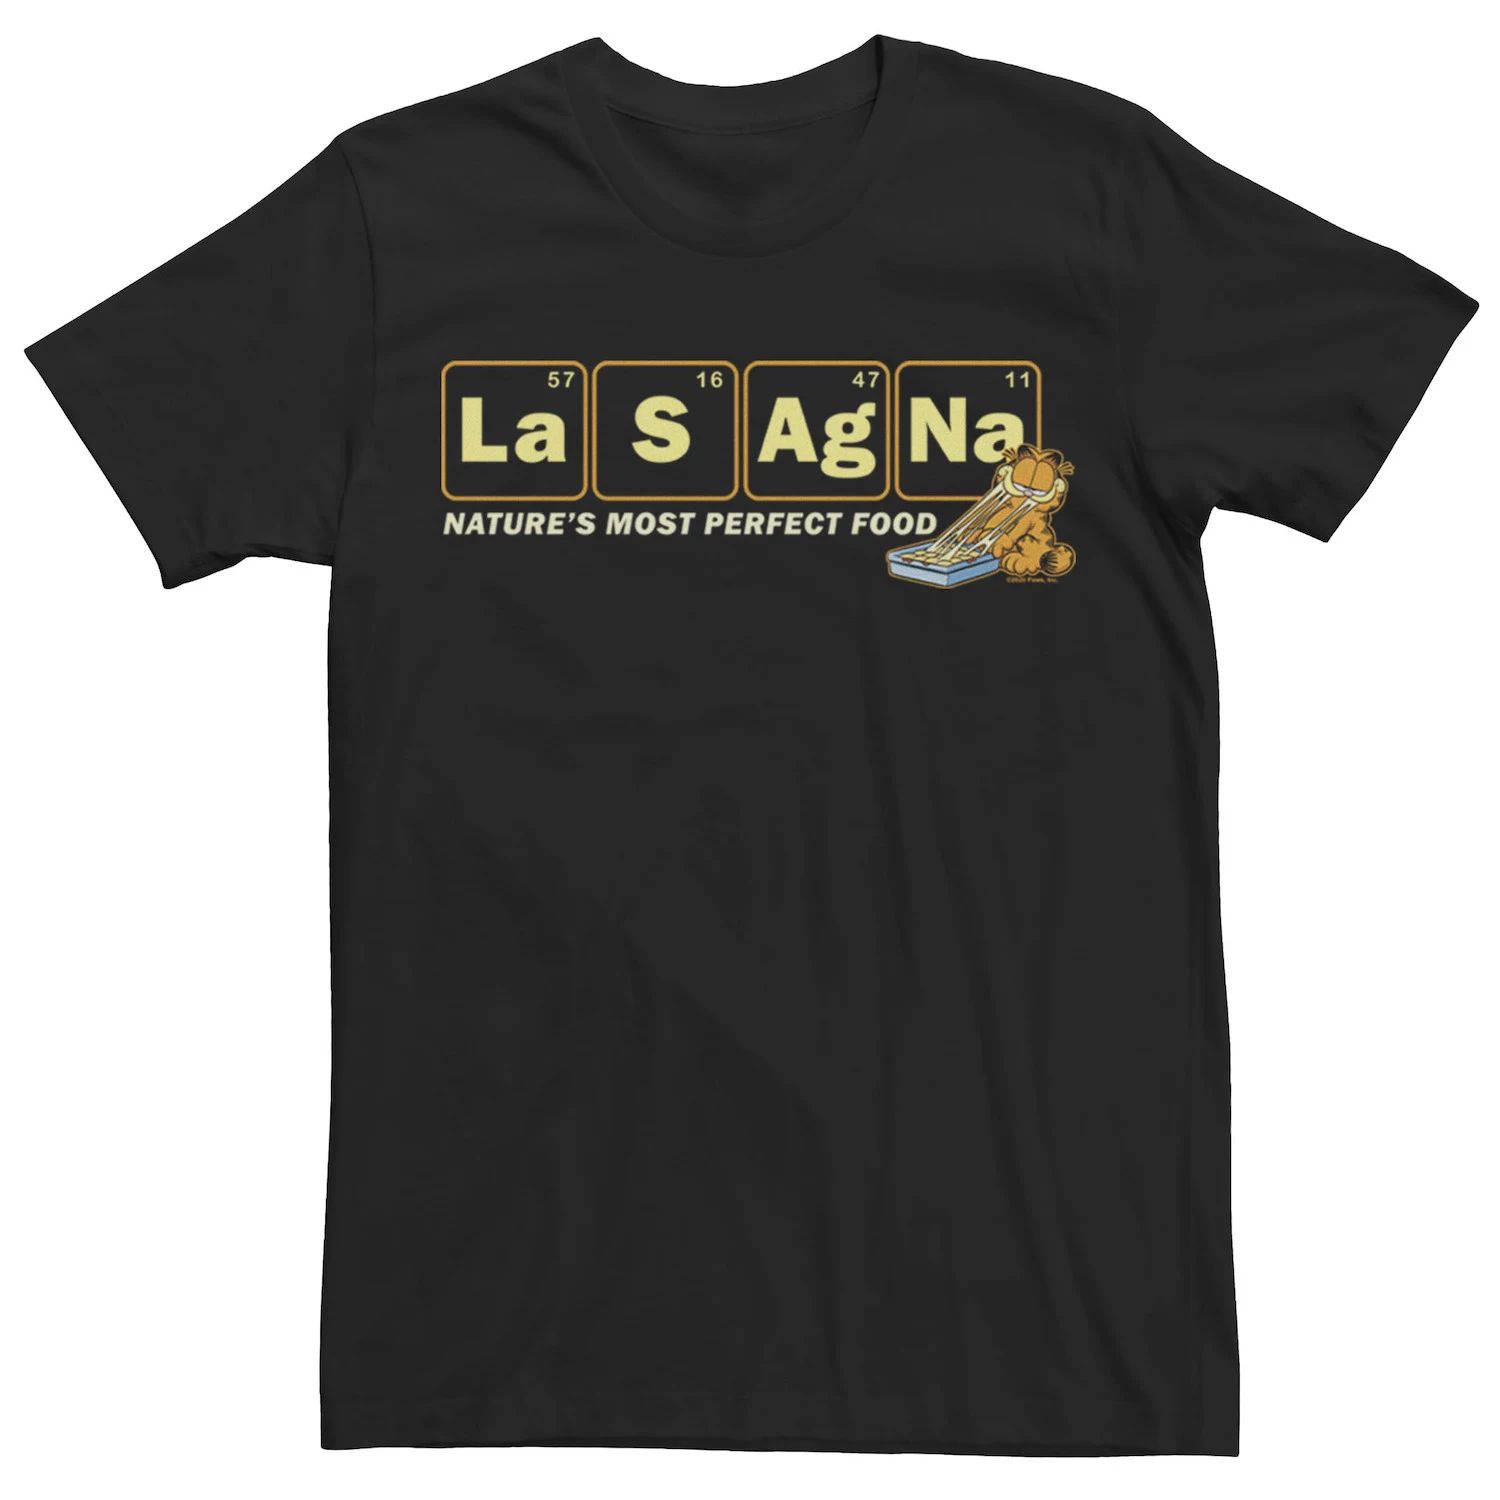 Мужская футболка периодического питания Garfield Lasagna Licensed Character